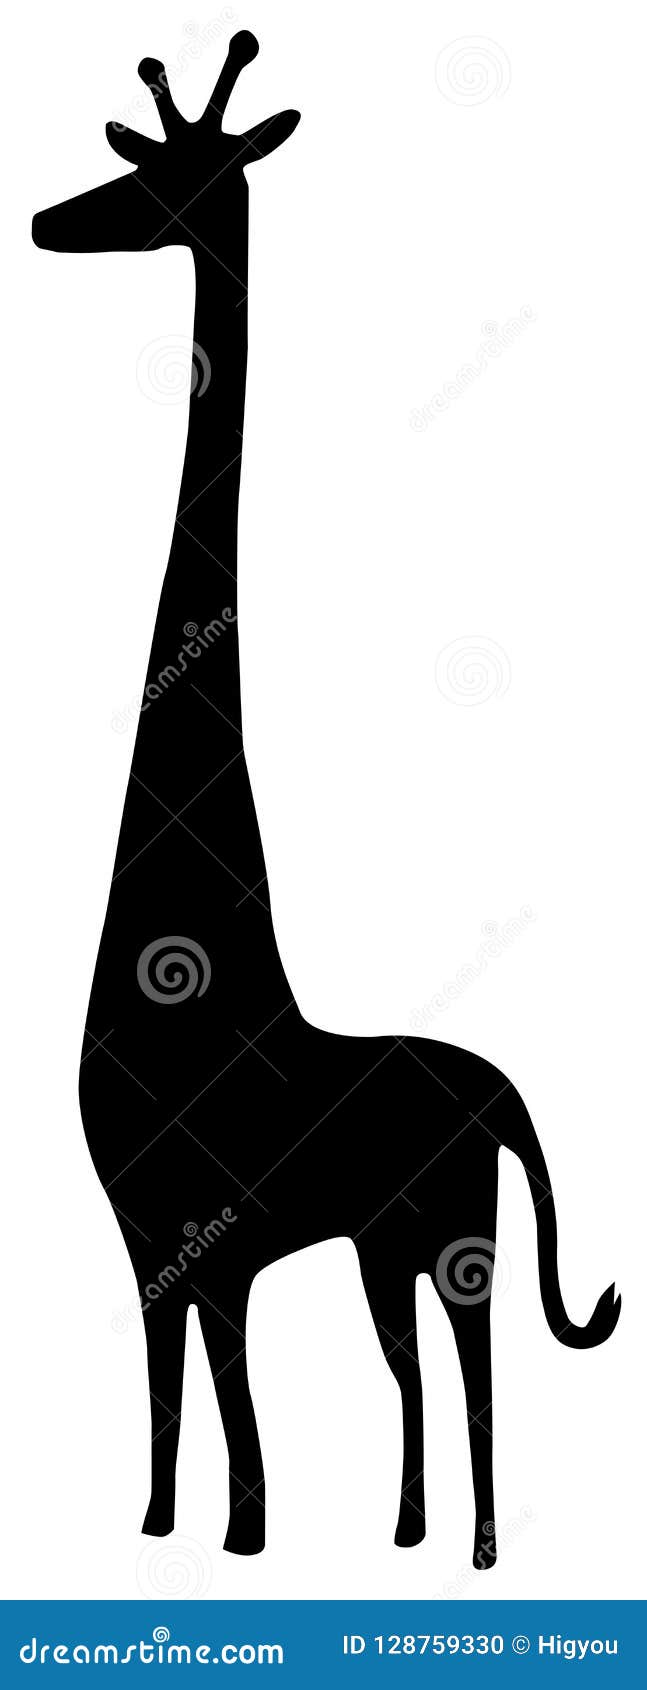 Download Giraffe Silhouette Stencil stock vector. Illustration of ...